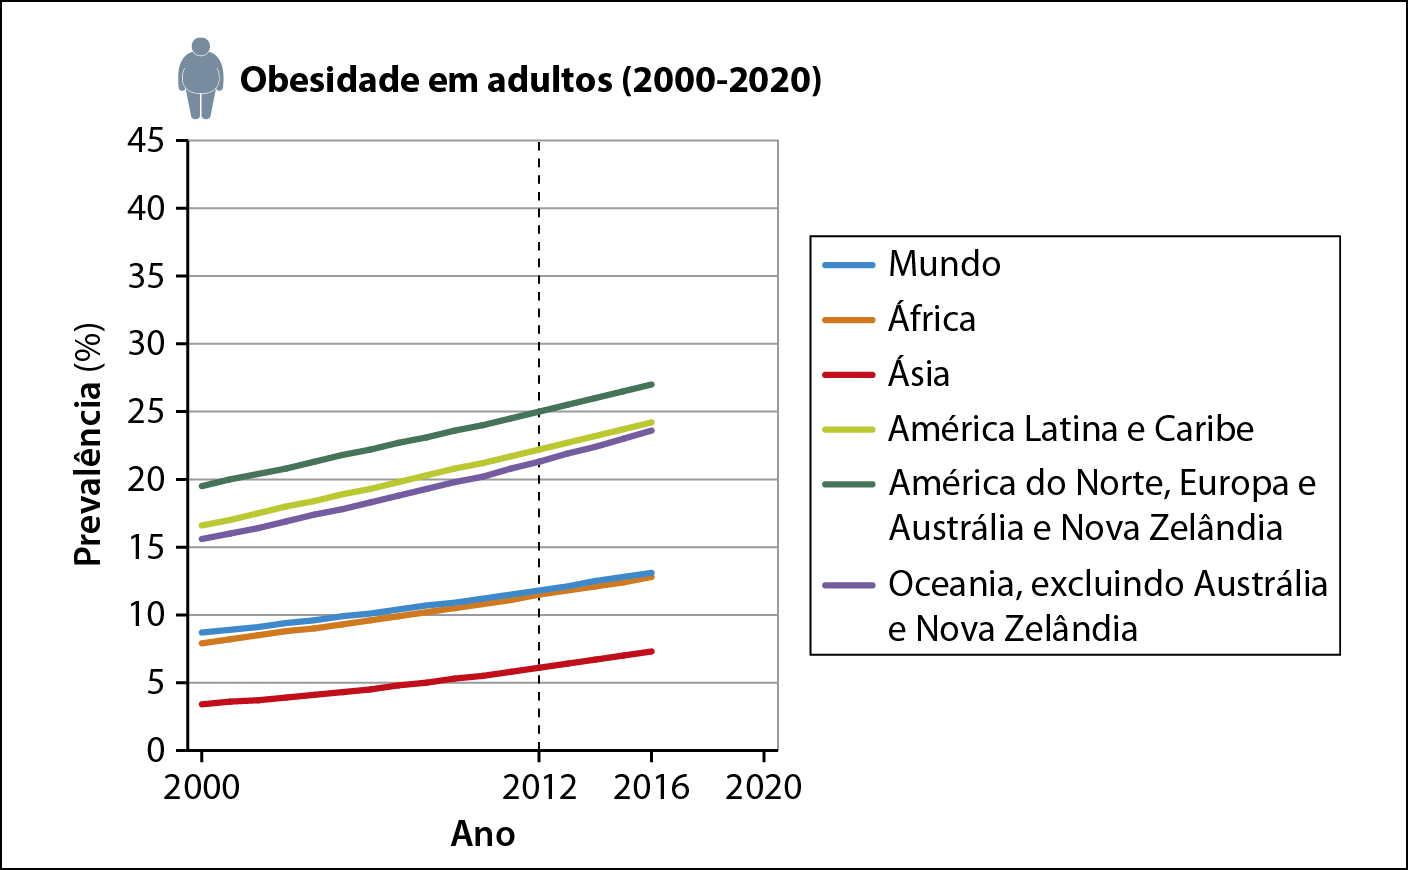 Gráfico de linhas. Obesidade adulta entre 2000 e 2014, por região, em porcentagem.  
No eixo vertical, constam dados de Prevalência (em porcentagem) da obesidade em adultos, entre 2000 e 2020, que vai de 0 a 45 por cento da população. No eixo horizontal, estão os anos de 2000, 2012, 2016 e 2020.  No ano de 2012, há uma linha pontilhada vertical.
Legenda: linha em azul contém os dados sobre o mundo; a linha em laranja contém os dados da África; a linha em vermelho contém os dados da Ásia; a linha em verde-claro contém os dados da América Latina e do Caribe; a linha em verde-escuro contém os dados da América do Norte, Europa e Austrália e Nova Zelândia; a linha em lilás contém os dados da Oceania, excluindo a Austrália e a Nova Zelândia.  
A linha azul que se refere aos dados mundiais, em 2000, estava pouco abaixo de 10, atingiu pouco mais de 10 em 2012 e em 2016 já estava mais próxima de 15.
A linha laranja, que se refere à África, em 2000, estava entre 5 e 10; em 2012 subiu para acima de 10; e, em 2016, estava entre 10 e 15.
A linha vermelha que se refere à Ásia, em 2000, estava abaixo de 5; em 2012 estava pouco acima de 5; e, em 2016, estava entre 5 e 10.
A linha verde claro que se refere à América Latina e ao Caribe, em 2000, estava próxima de 15; em 2012 estava entre 20 e 25; e, em 2016, já estava próxima a 30.
A linha verde escuro que se refere à América do Norte, à Europa e à Austrália e à Nova Zelândia, em 2000, estava pouco abaixo de 20; em 2012, atingiu 25; e, em 2016, já estava acima de 25.
A linha lilás, que se refere à Oceania, excluindo a Austrália e a Nova Zelândia, em 2000, estava pouco acima de 15; em 2012, estava pouco acima de 20; e, em 2016, estava próxima a 25.